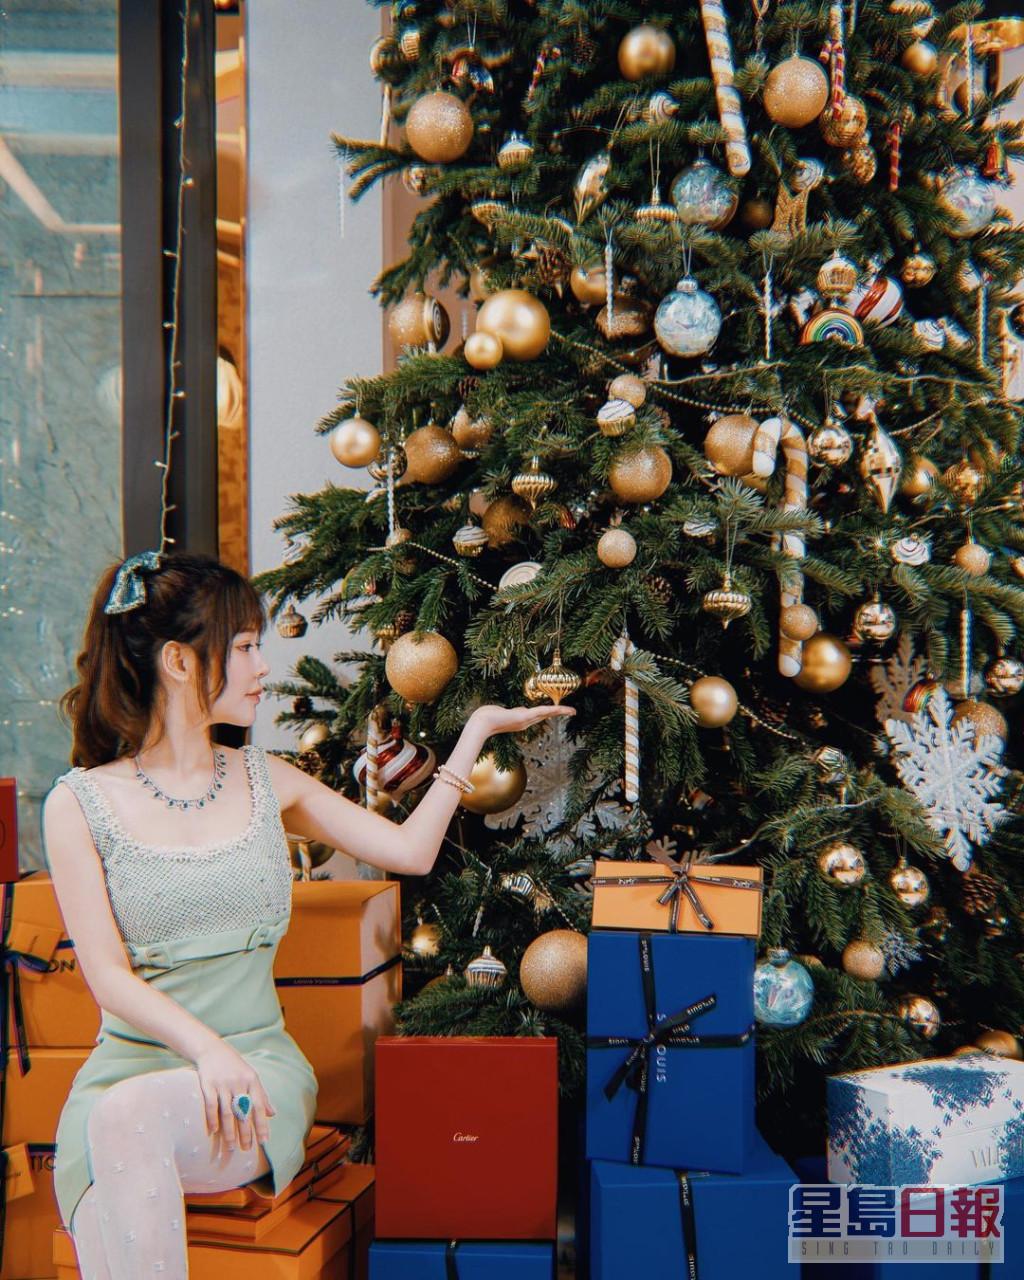 蔡天凤家中放了一个巨型圣诞树，树下堆满贵妇品牌Hermes大大小小的礼物盒。